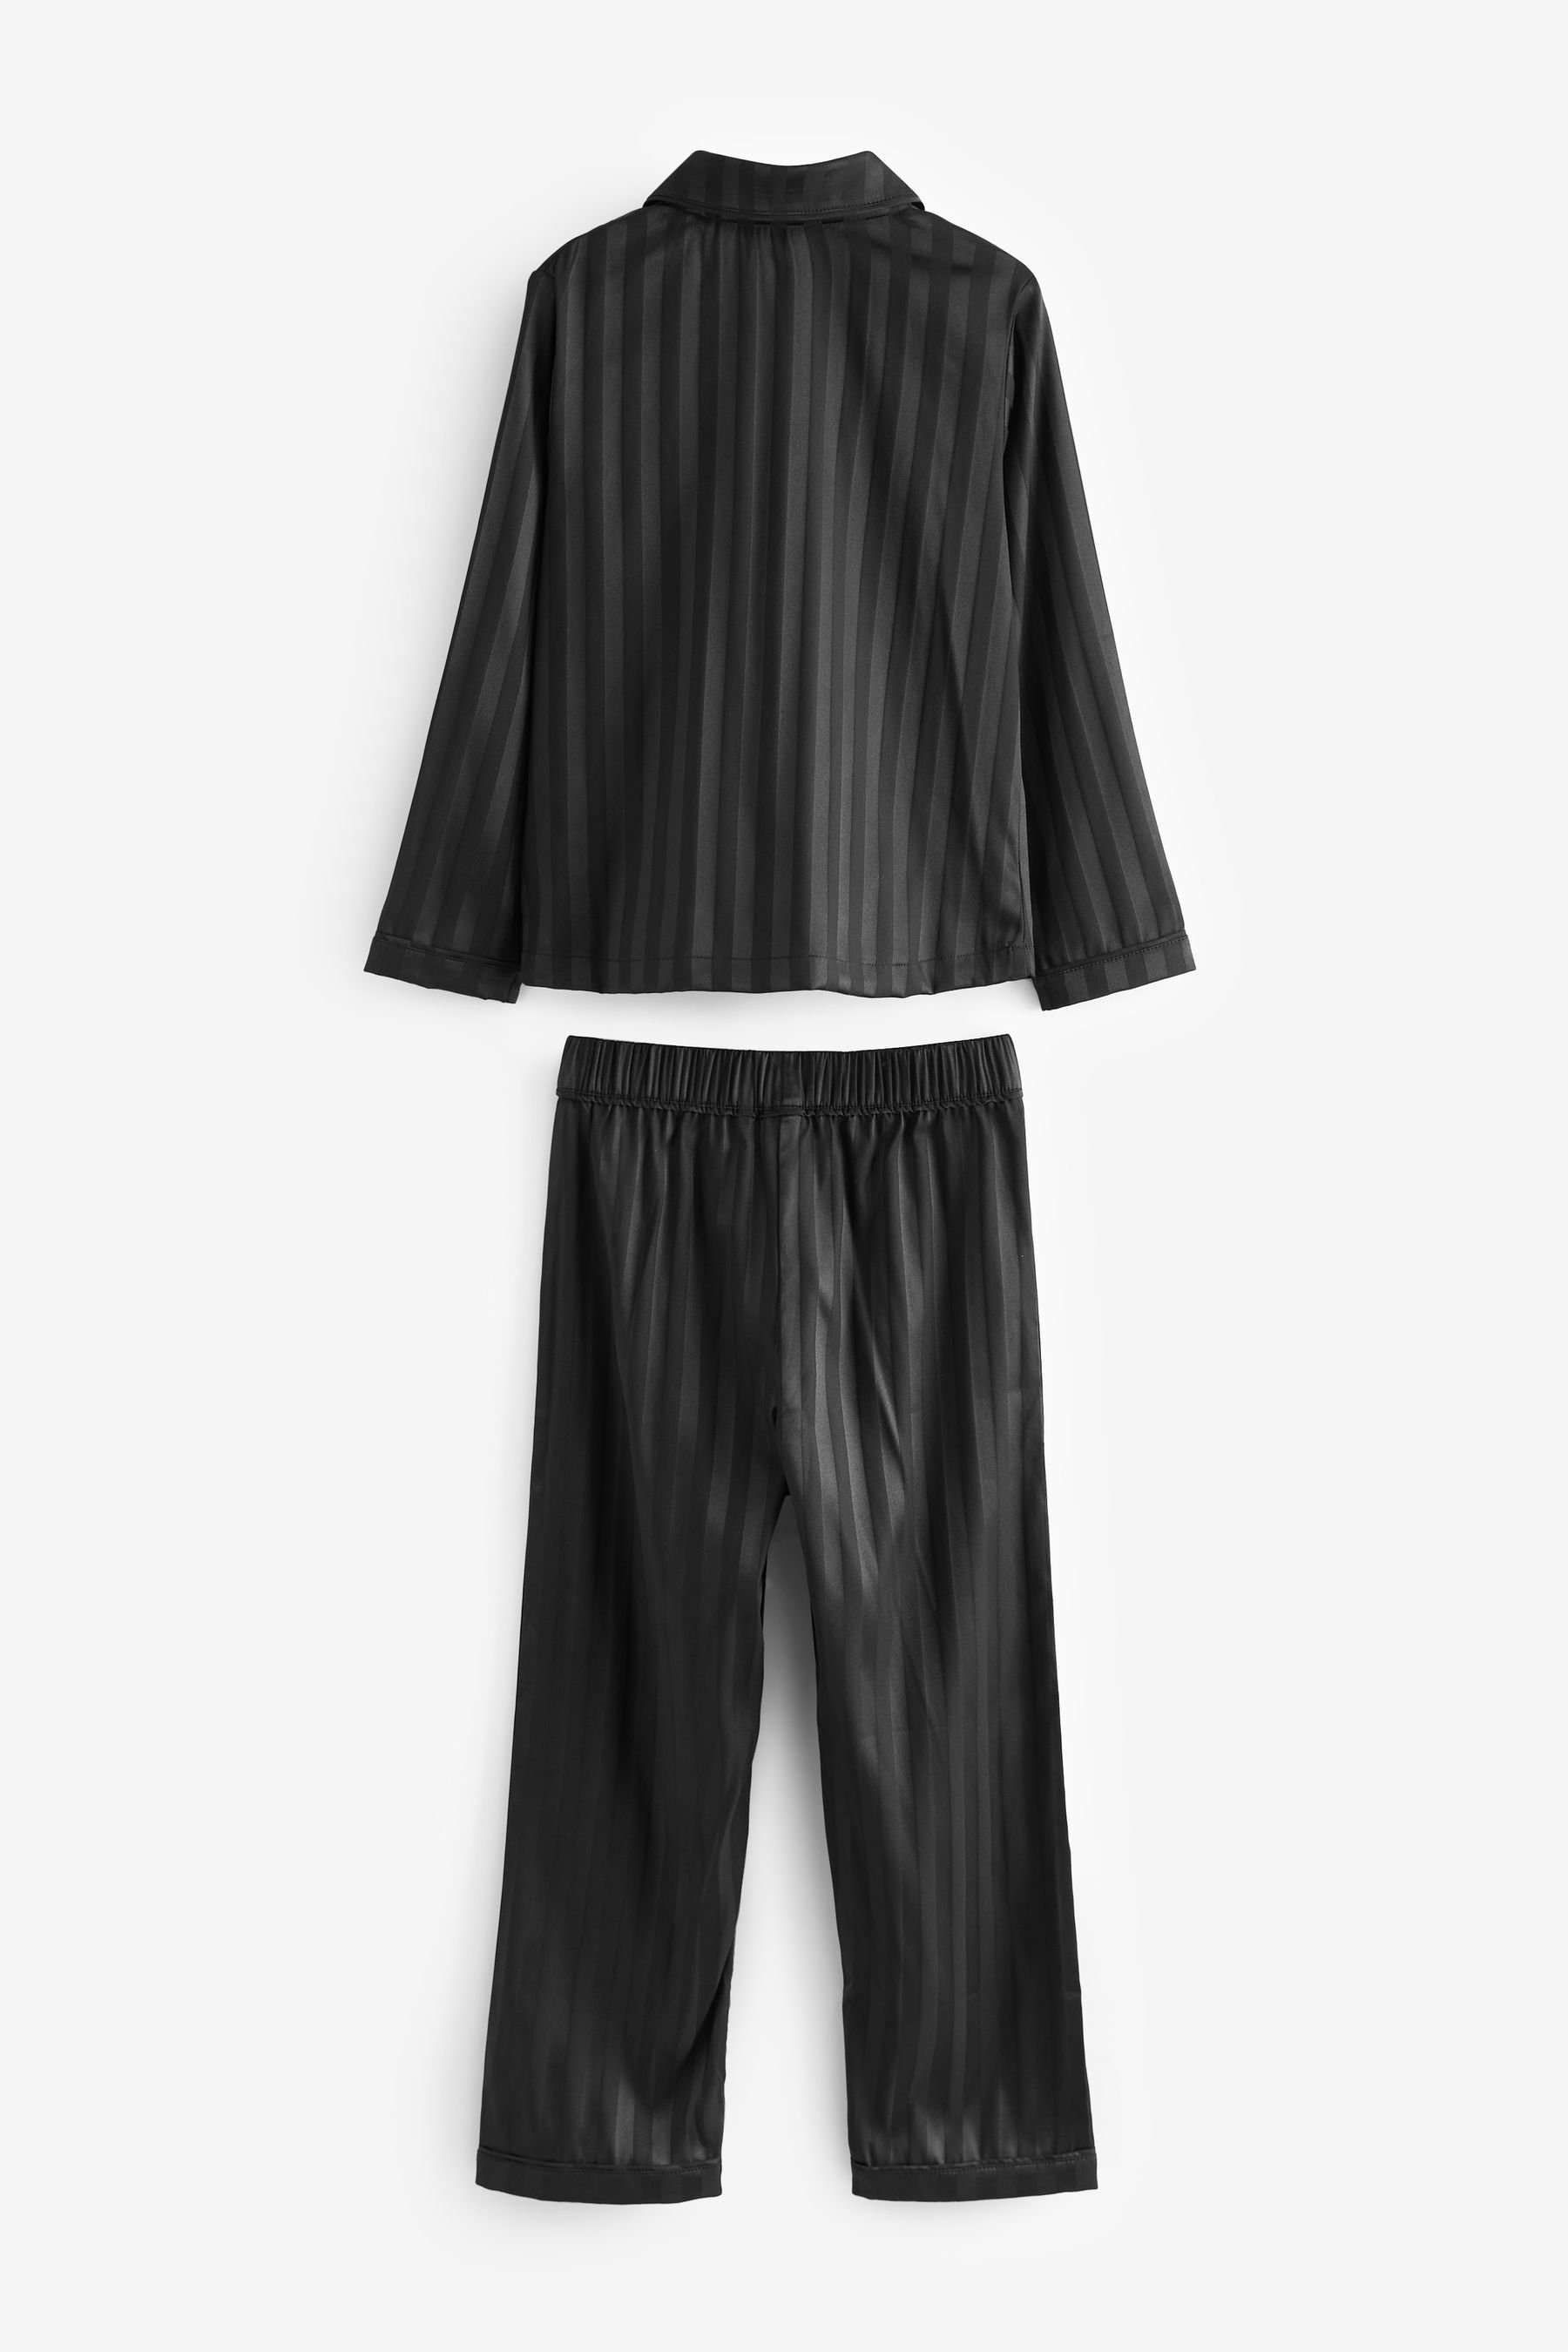 Self tlg) Durchgehend Next (2 Black Pyjama aus Stripe Satin geknöpfter Schlafanzug